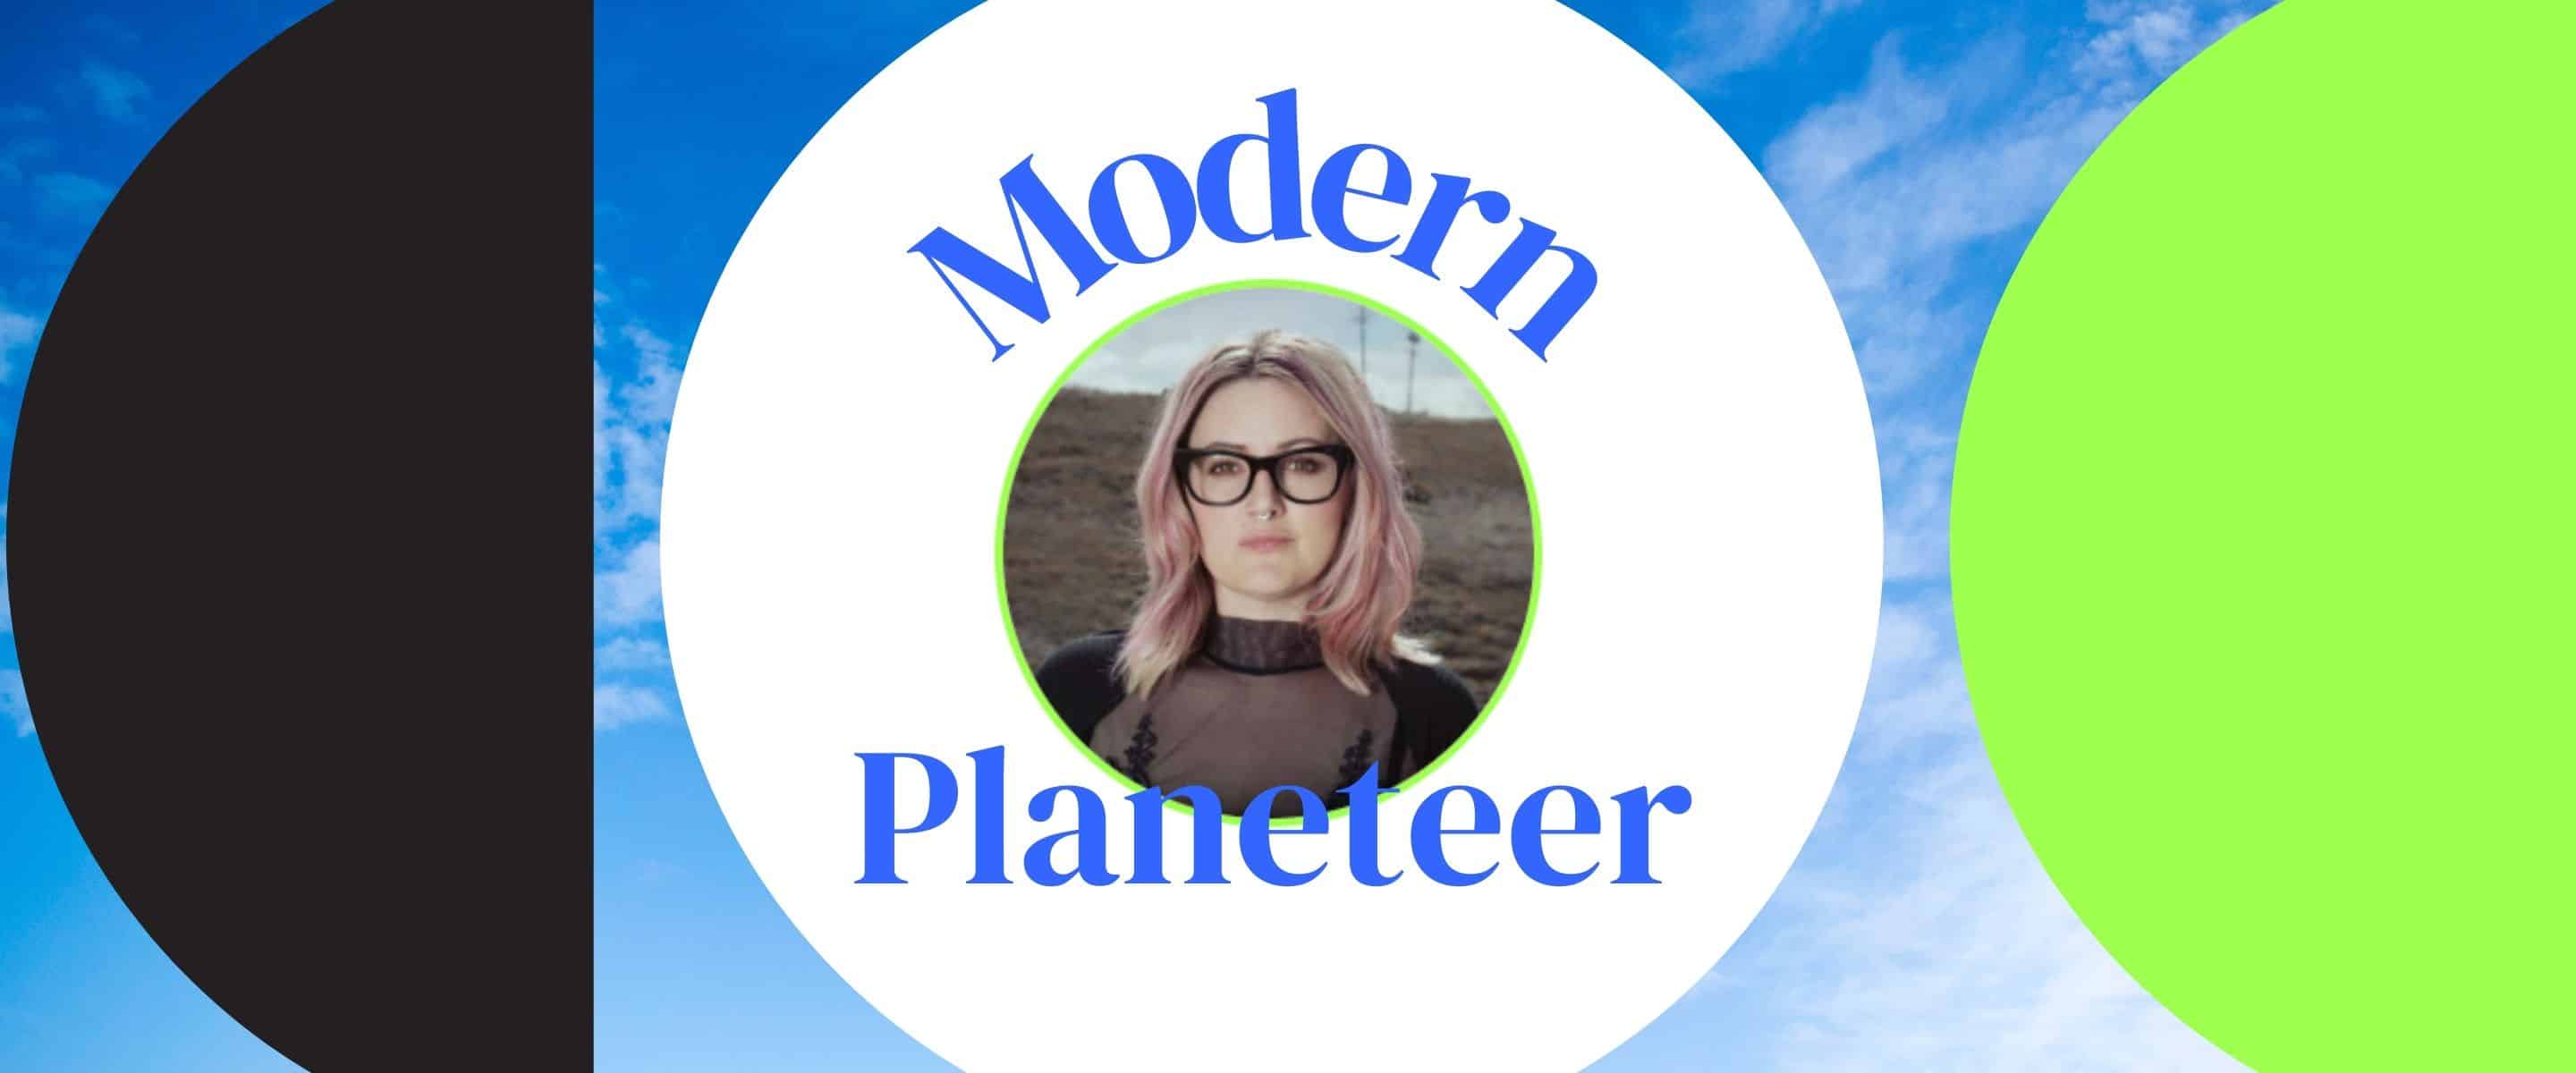 Modern Planeteer - Valerie Hawks